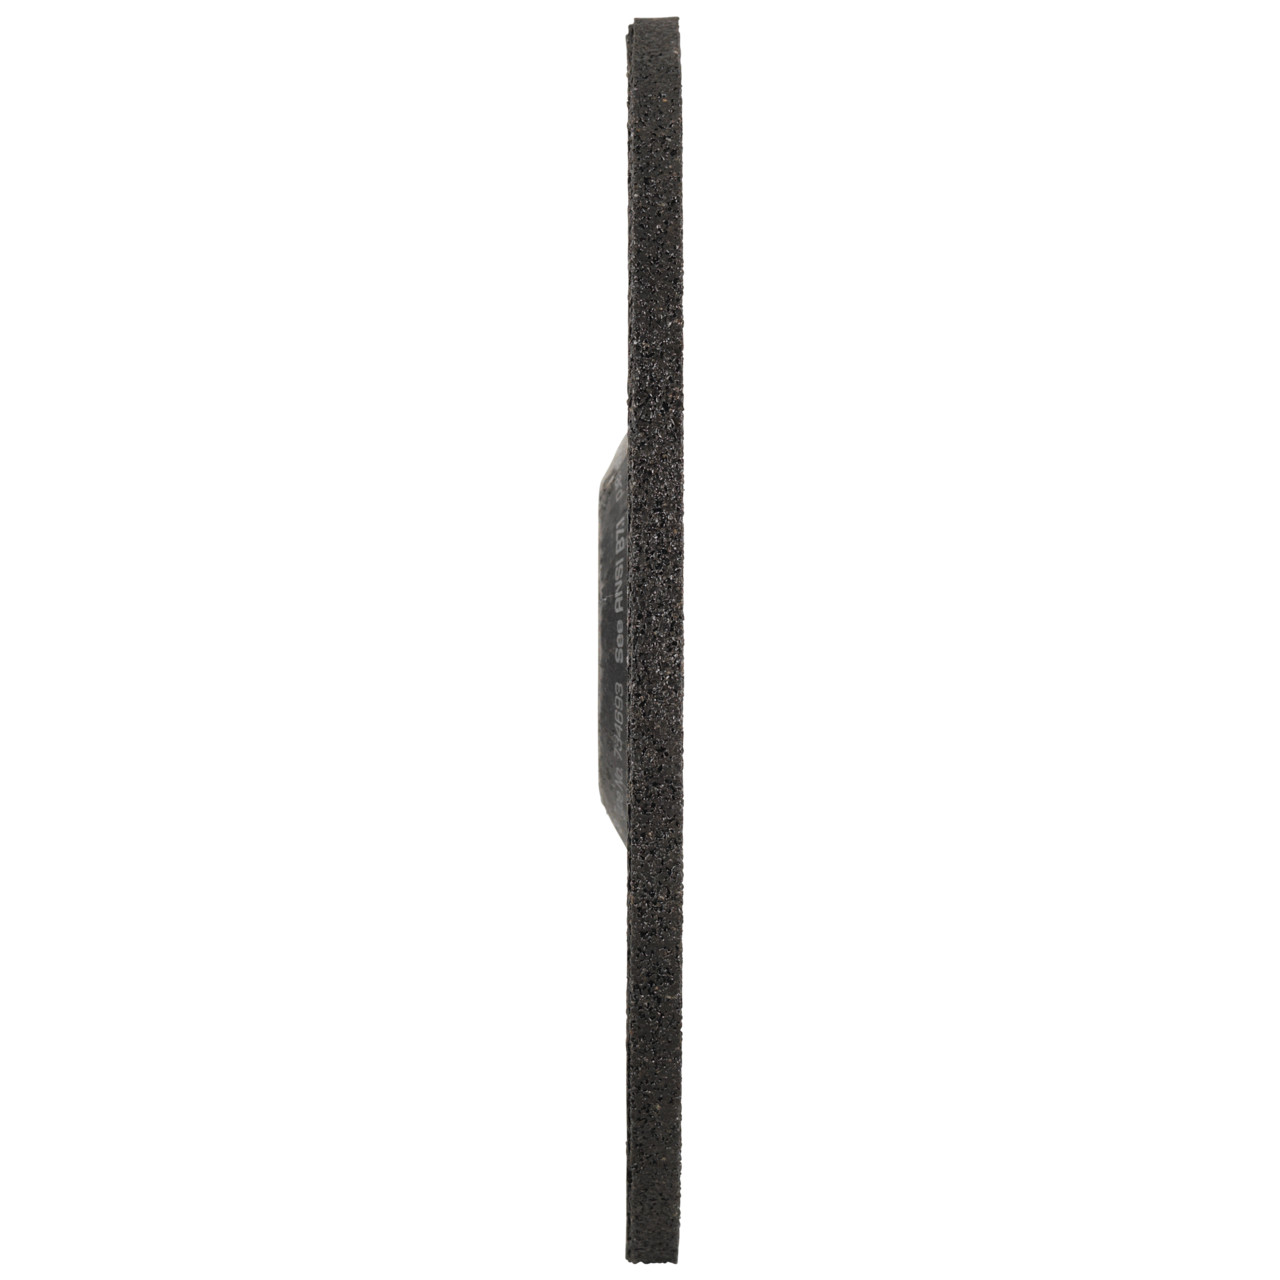 Tyrolit Grove slijpschijf DxUxH 100x6x16 FASTCUT Basic voor staal en roestvast staal, vorm: 27C - offset uitvoering, Art. 34468715